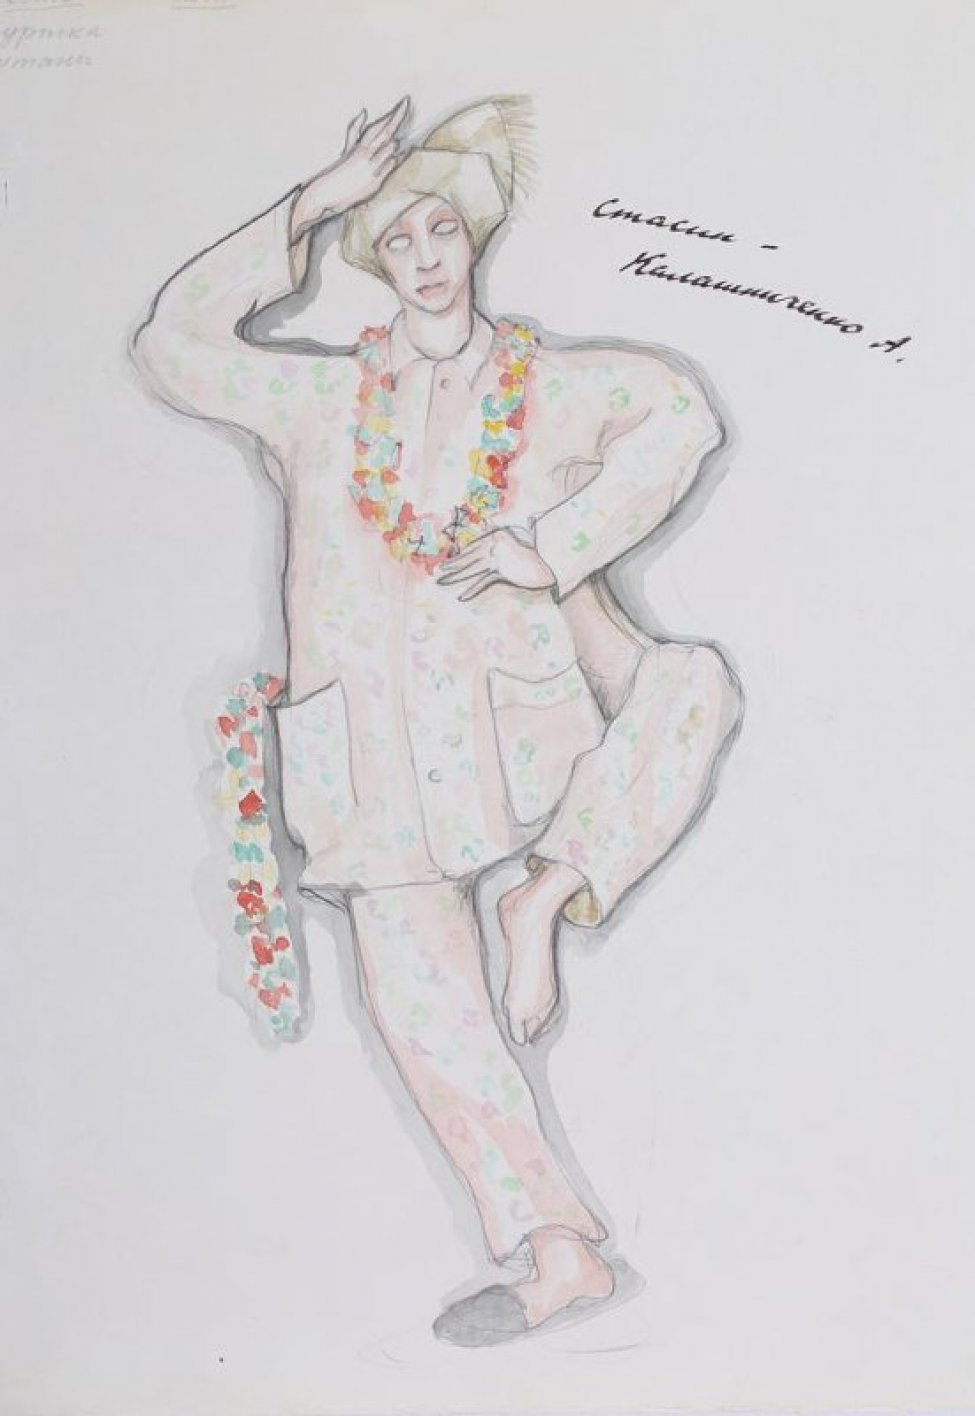 Изображен мужчина стоящий на одной ноге; в розовой пижаме с мелкими цветочками. Правая рука поднята к голове, левая на поясе. На груди и в правом кармане - цветочные гирлянды.